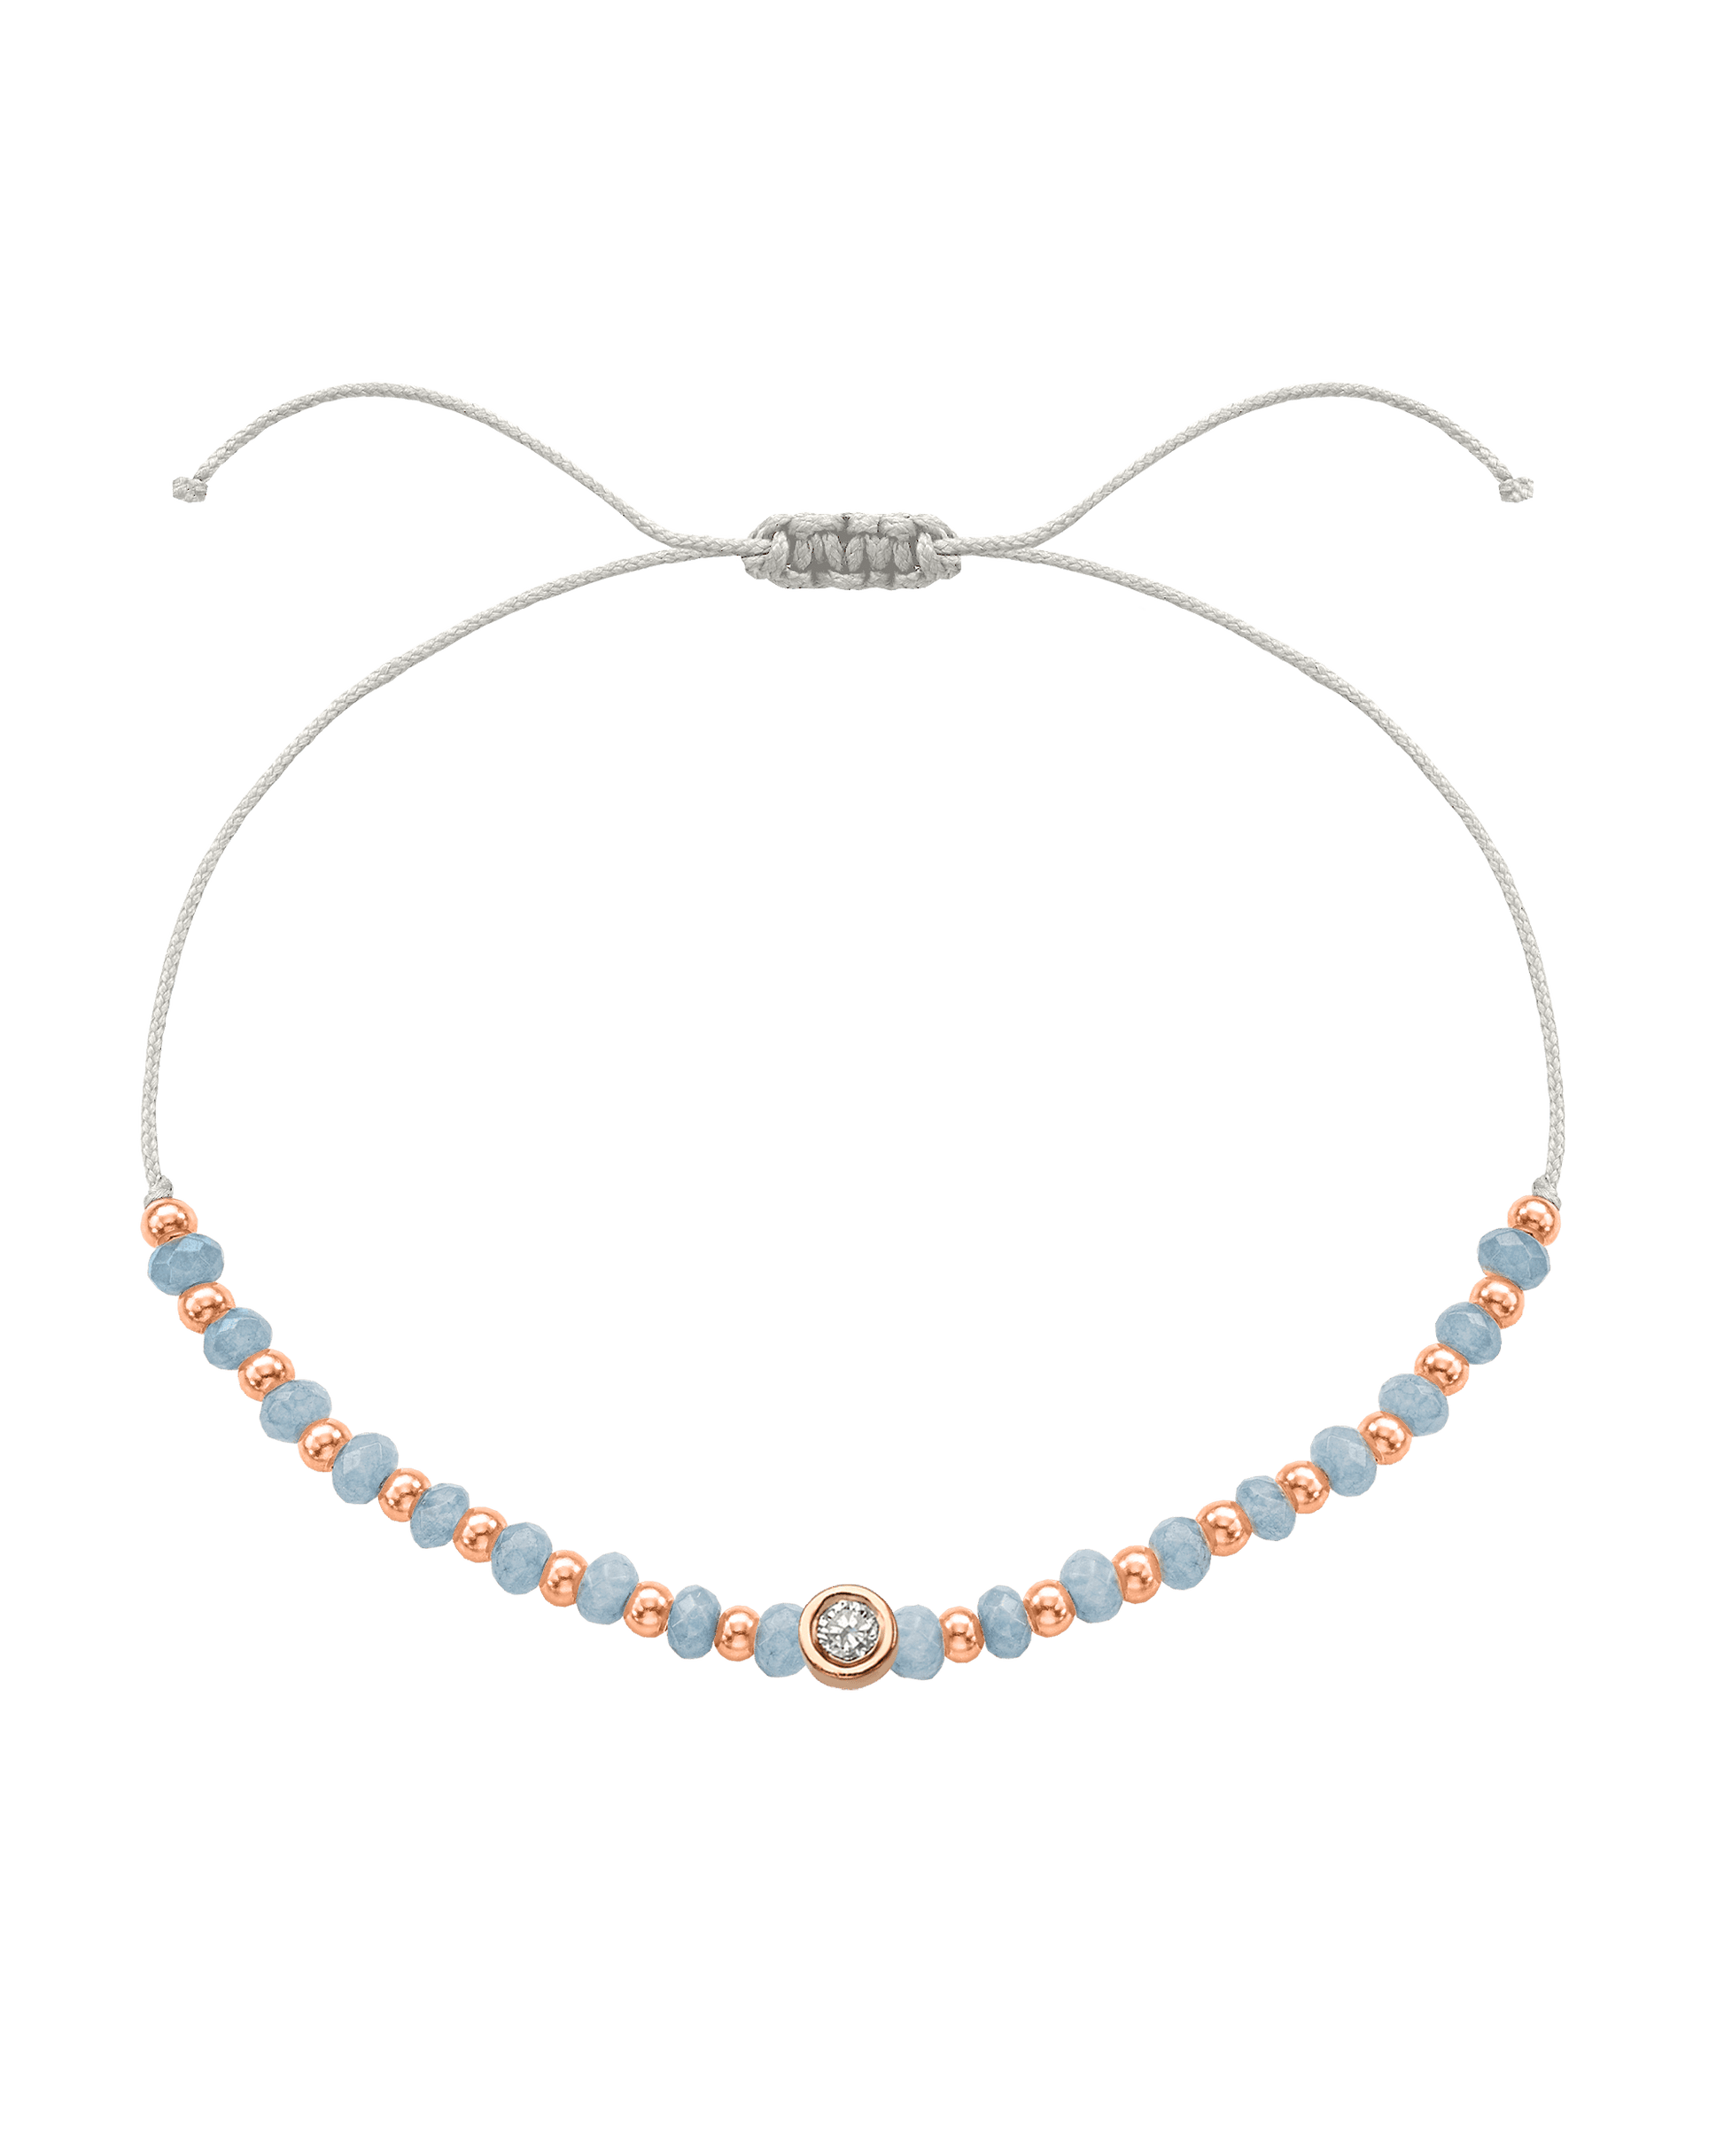 Celestite Gemstone String of Love Bracelet for Mindfulness - 14K Rose Gold Bracelets 14K Solid Gold Pearl Medium: 0.04ct 